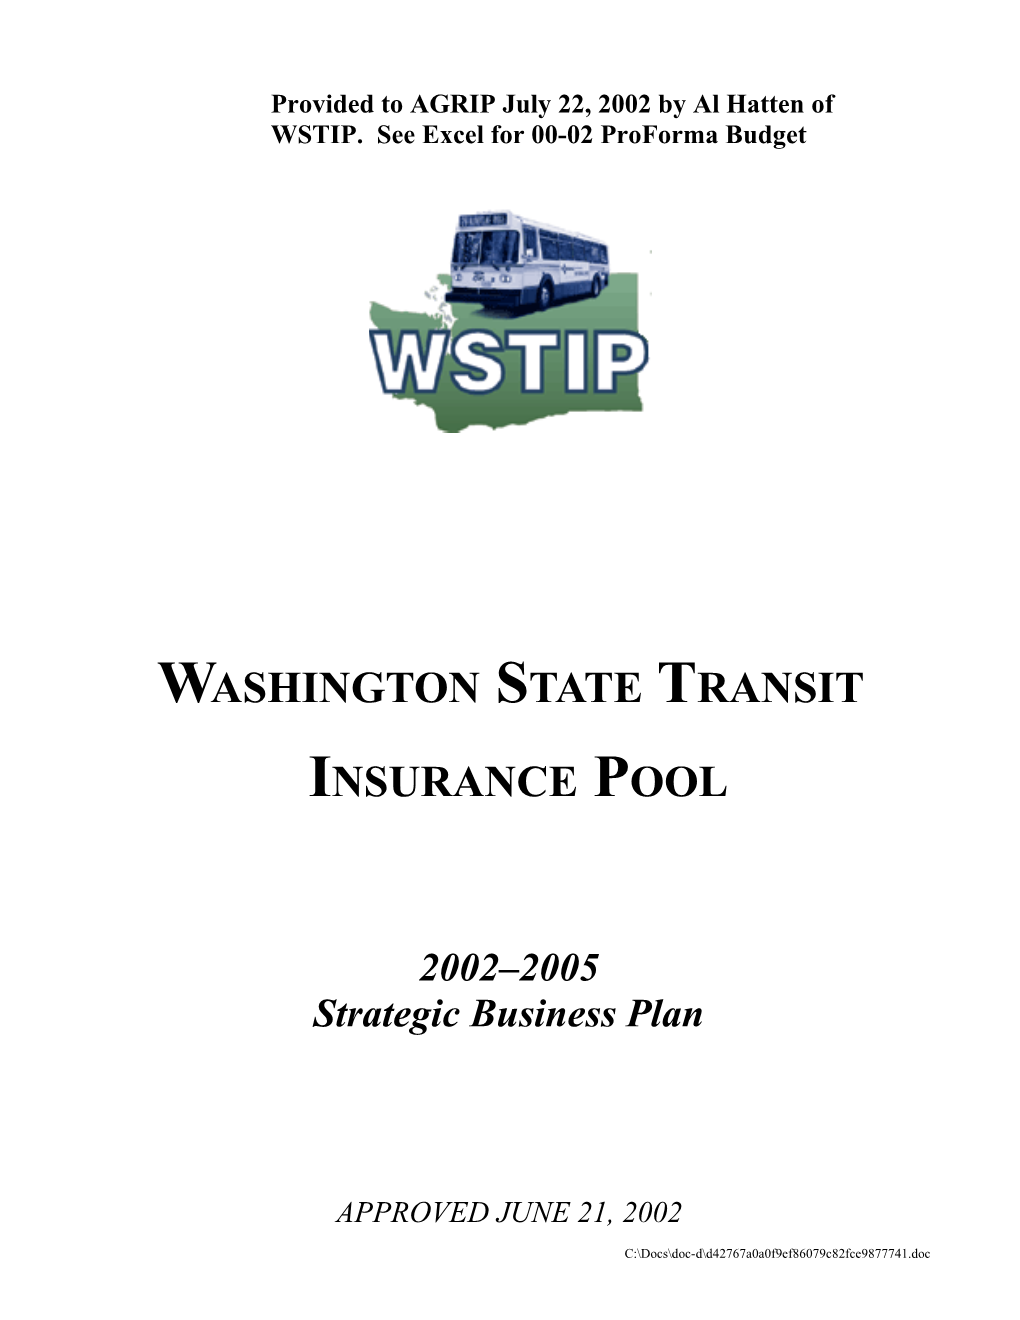 Washington State Transit